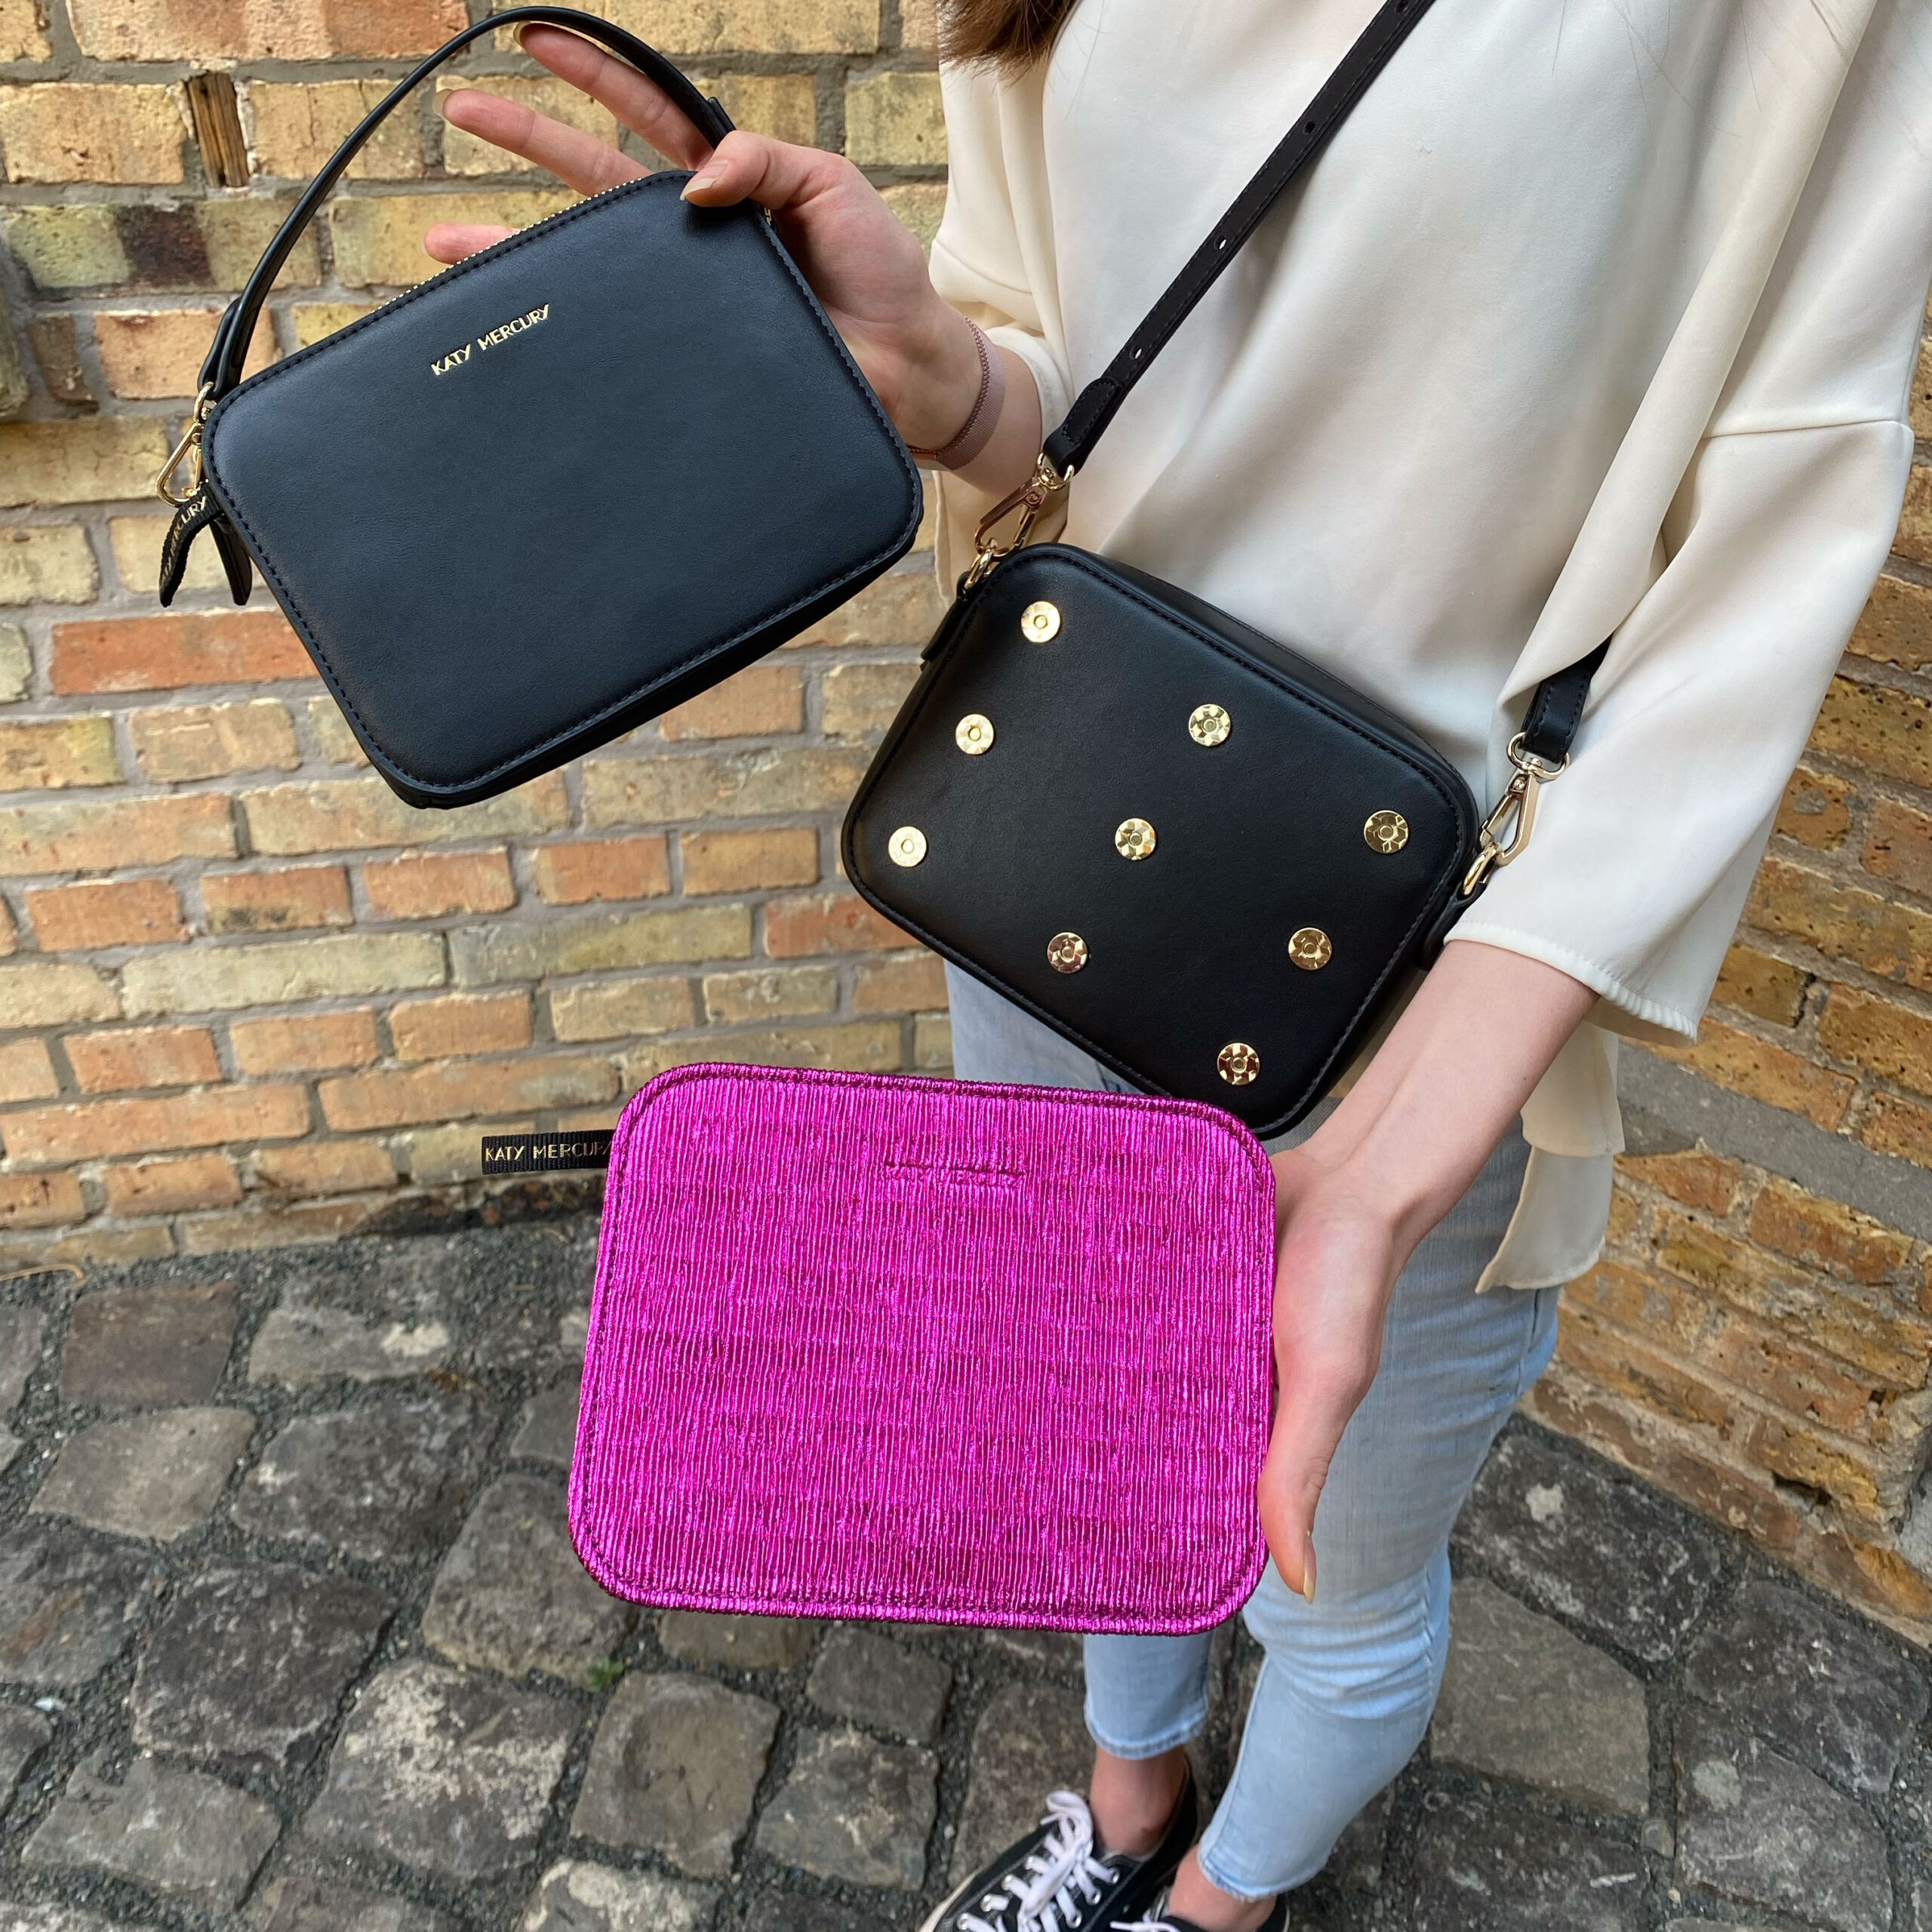 Katy Mercury Bag#1 mit StyleCOVER Wechselklappe Pink metallic und Schwarzes Nappaleder Vegan Leather klassisches Wechsel-Cover Umhängetasche und kleines Täschchen